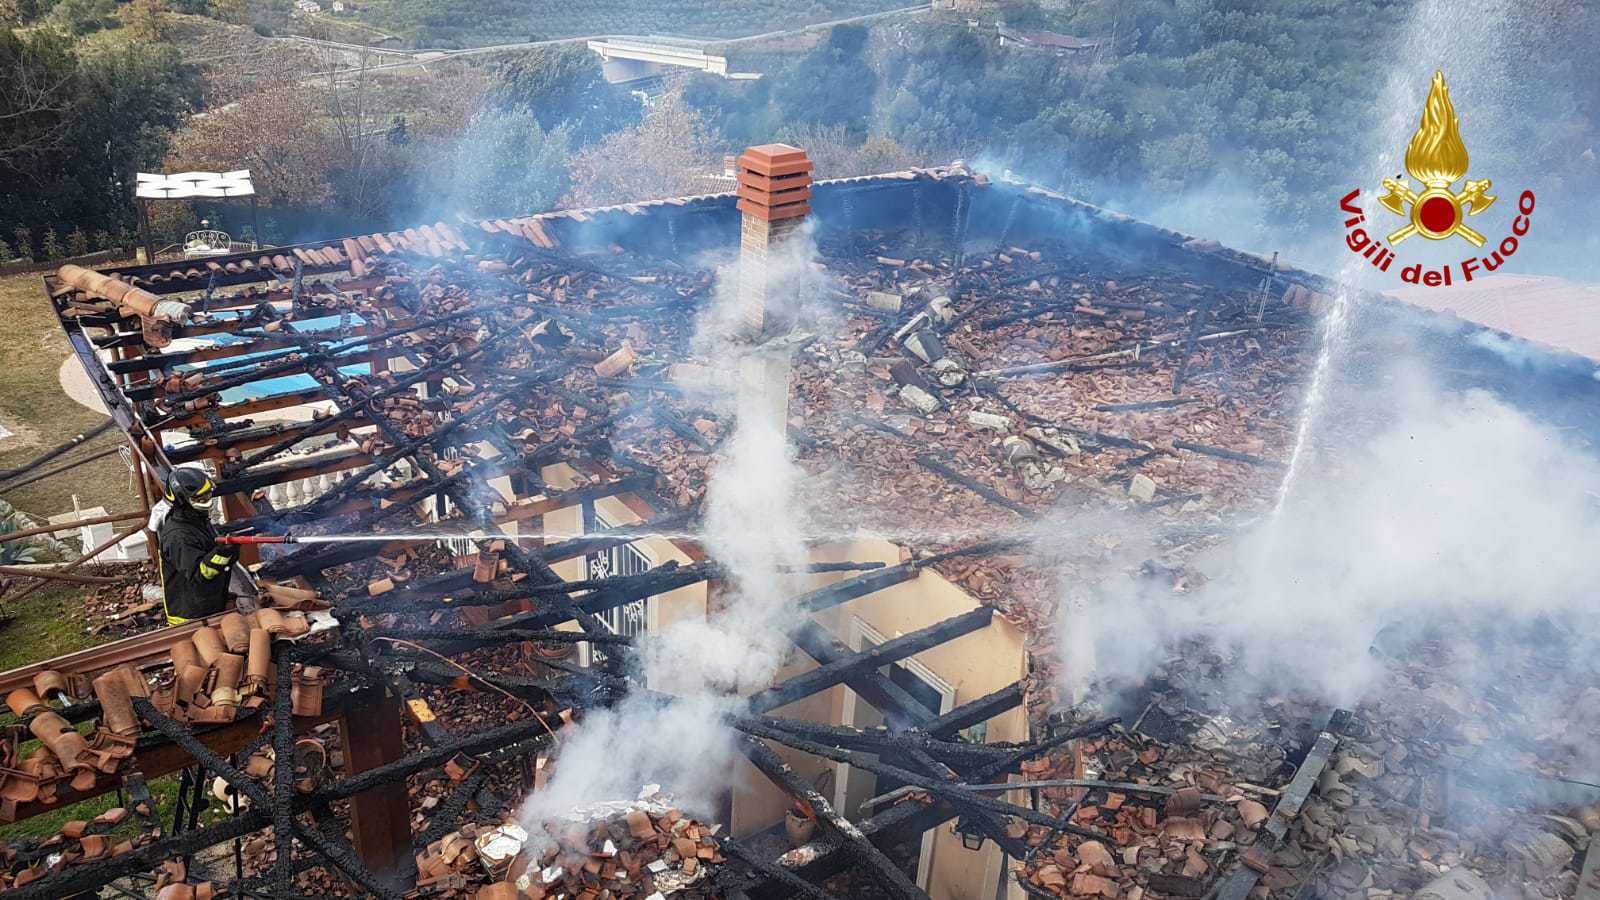 Nocera Terinese (CZ). Incendio abitazione rogo distrugge tetto, probabile dolo sul posto i VVF